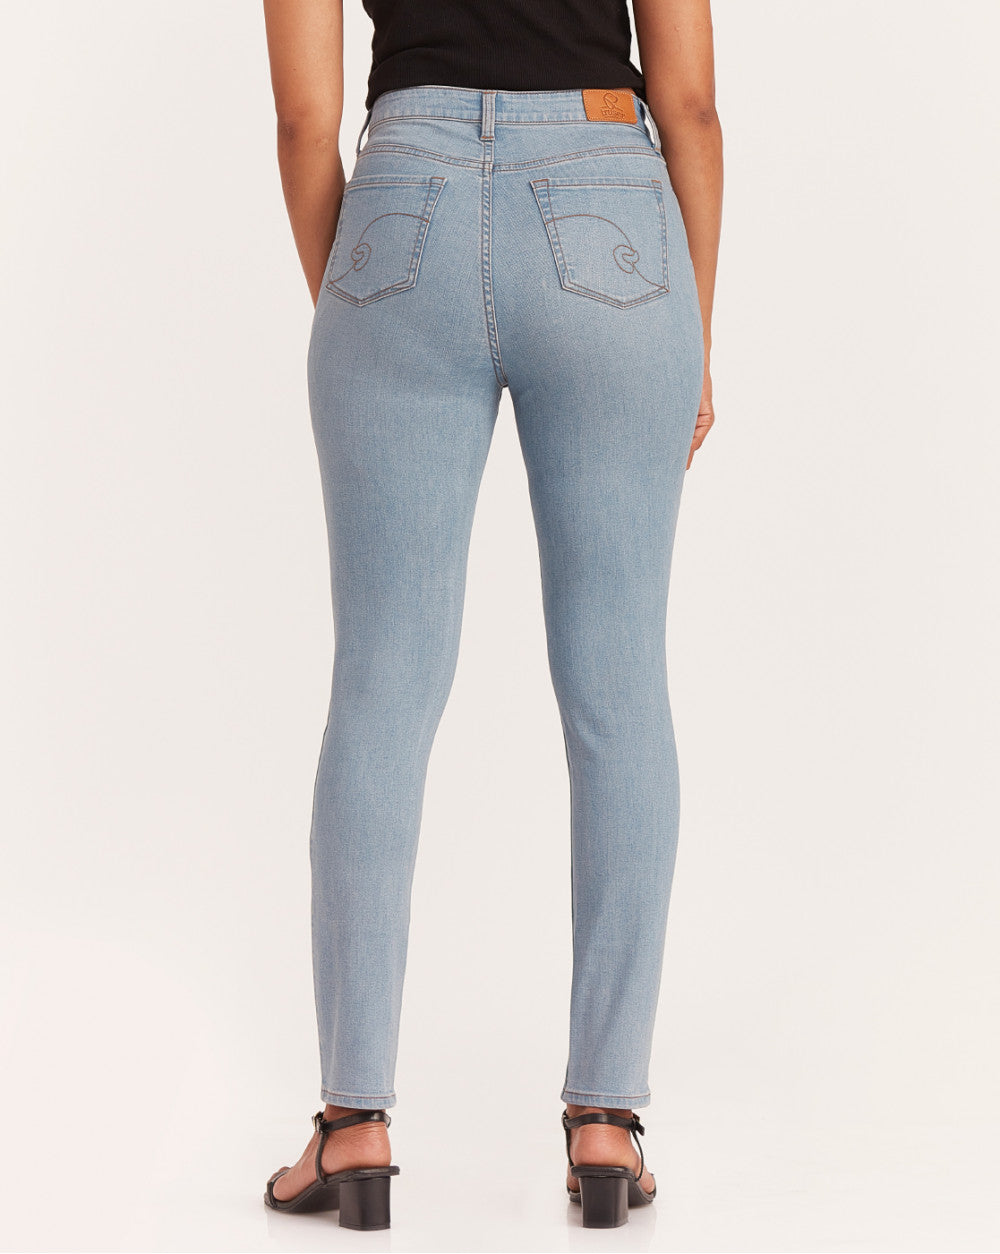 Skinny Fit Waist Jeans - Vapour Blue